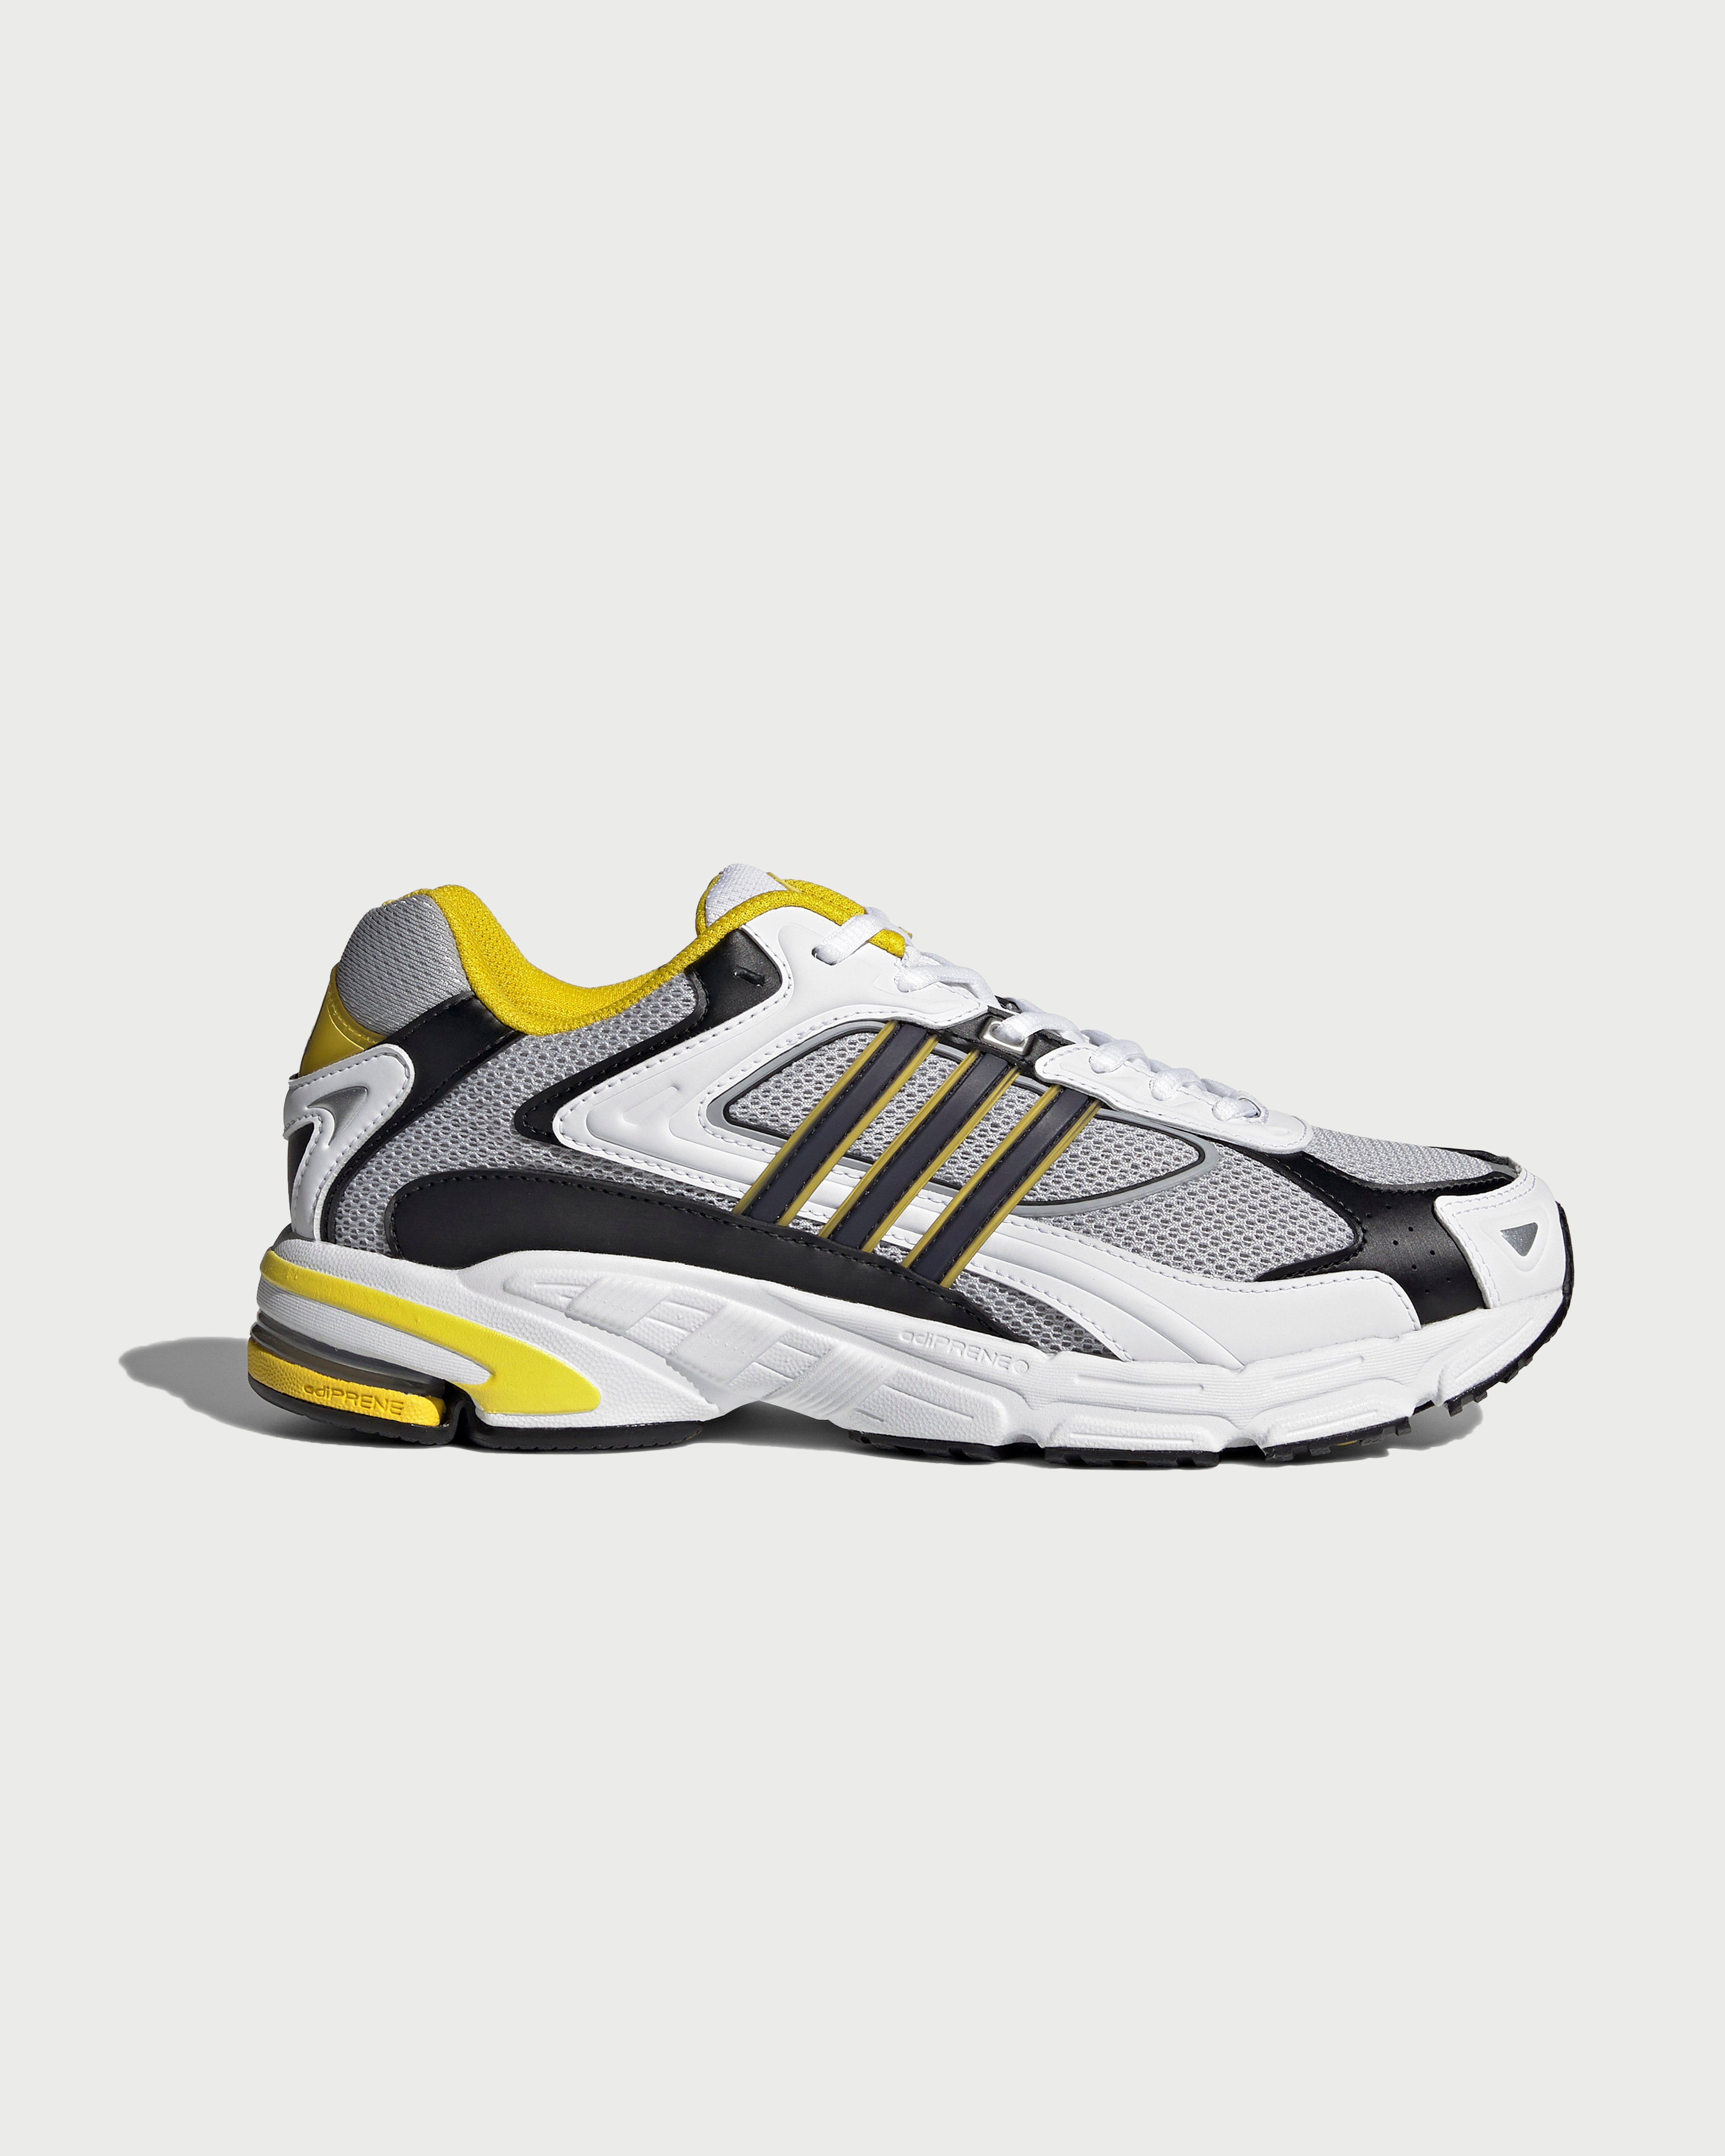 Adidas - Response CL White/Yellow - Footwear - White - Image 1